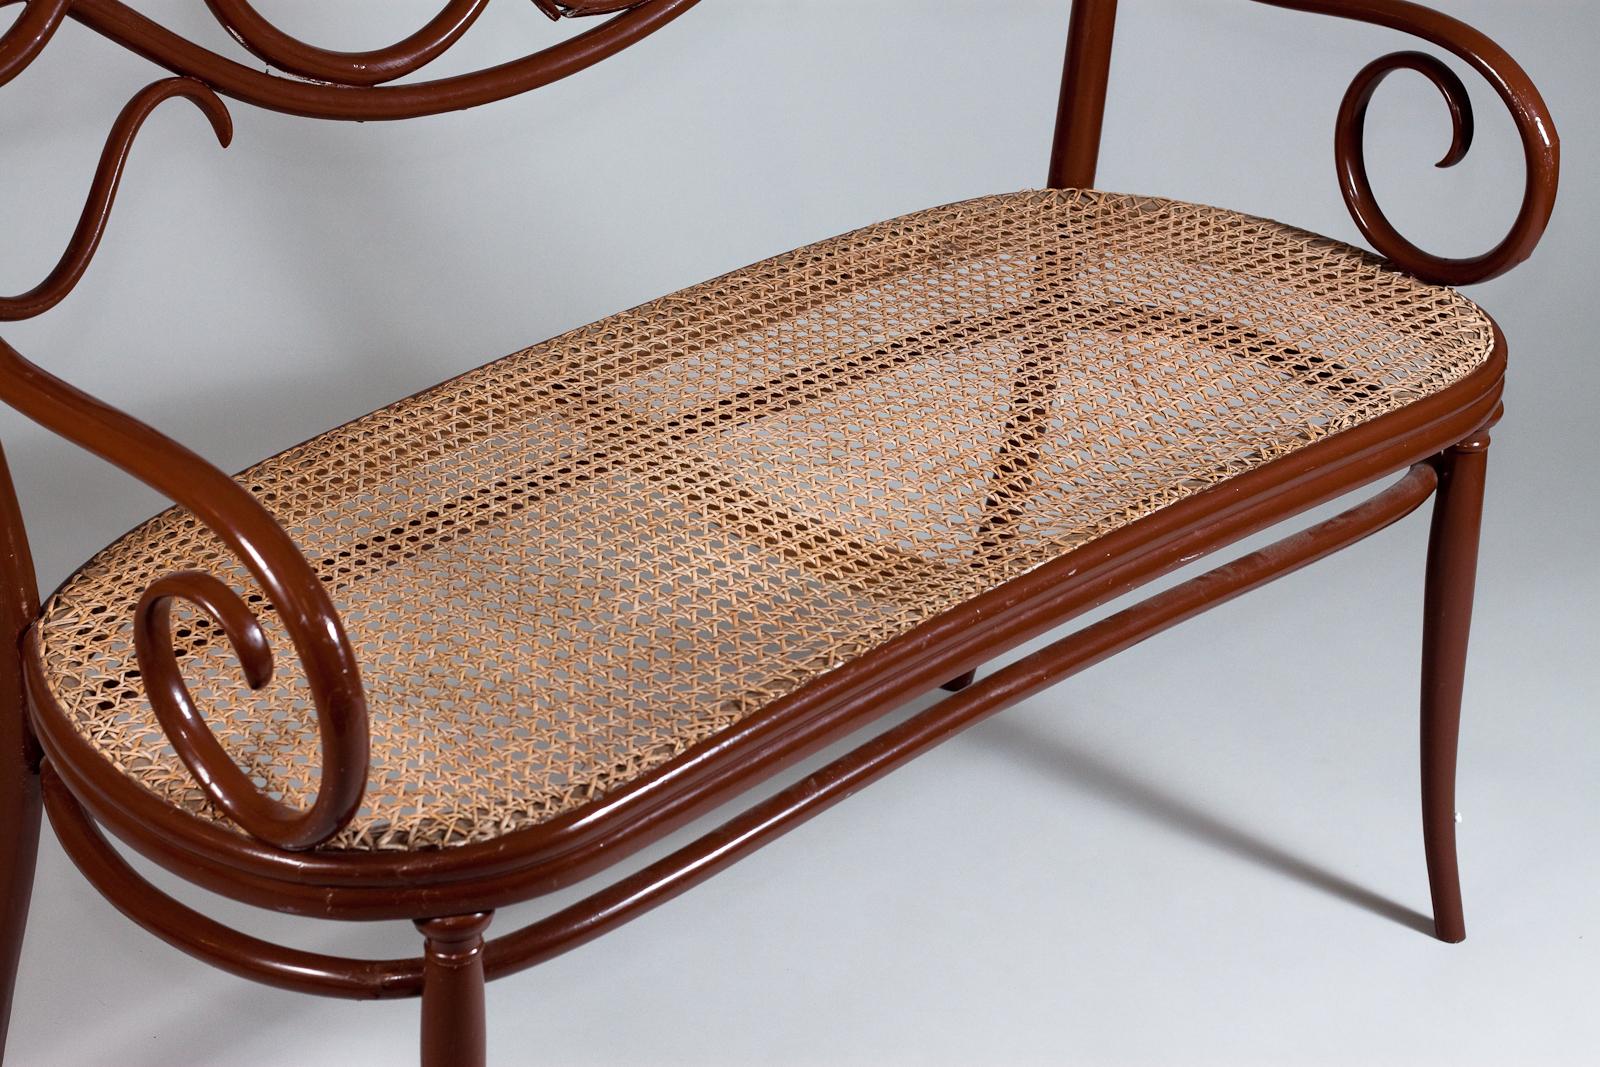 Das Thonet No. 2 Bentwood Sofa aus dem späten 19. Jahrhundert ist ein wunderschönes Vintage-Stück, das Eleganz und Raffinesse ausstrahlt. Dieses Sofa ist vollständig aus Bugholz gefertigt und behält seine ursprüngliche Sitzfläche aus geflochtenem